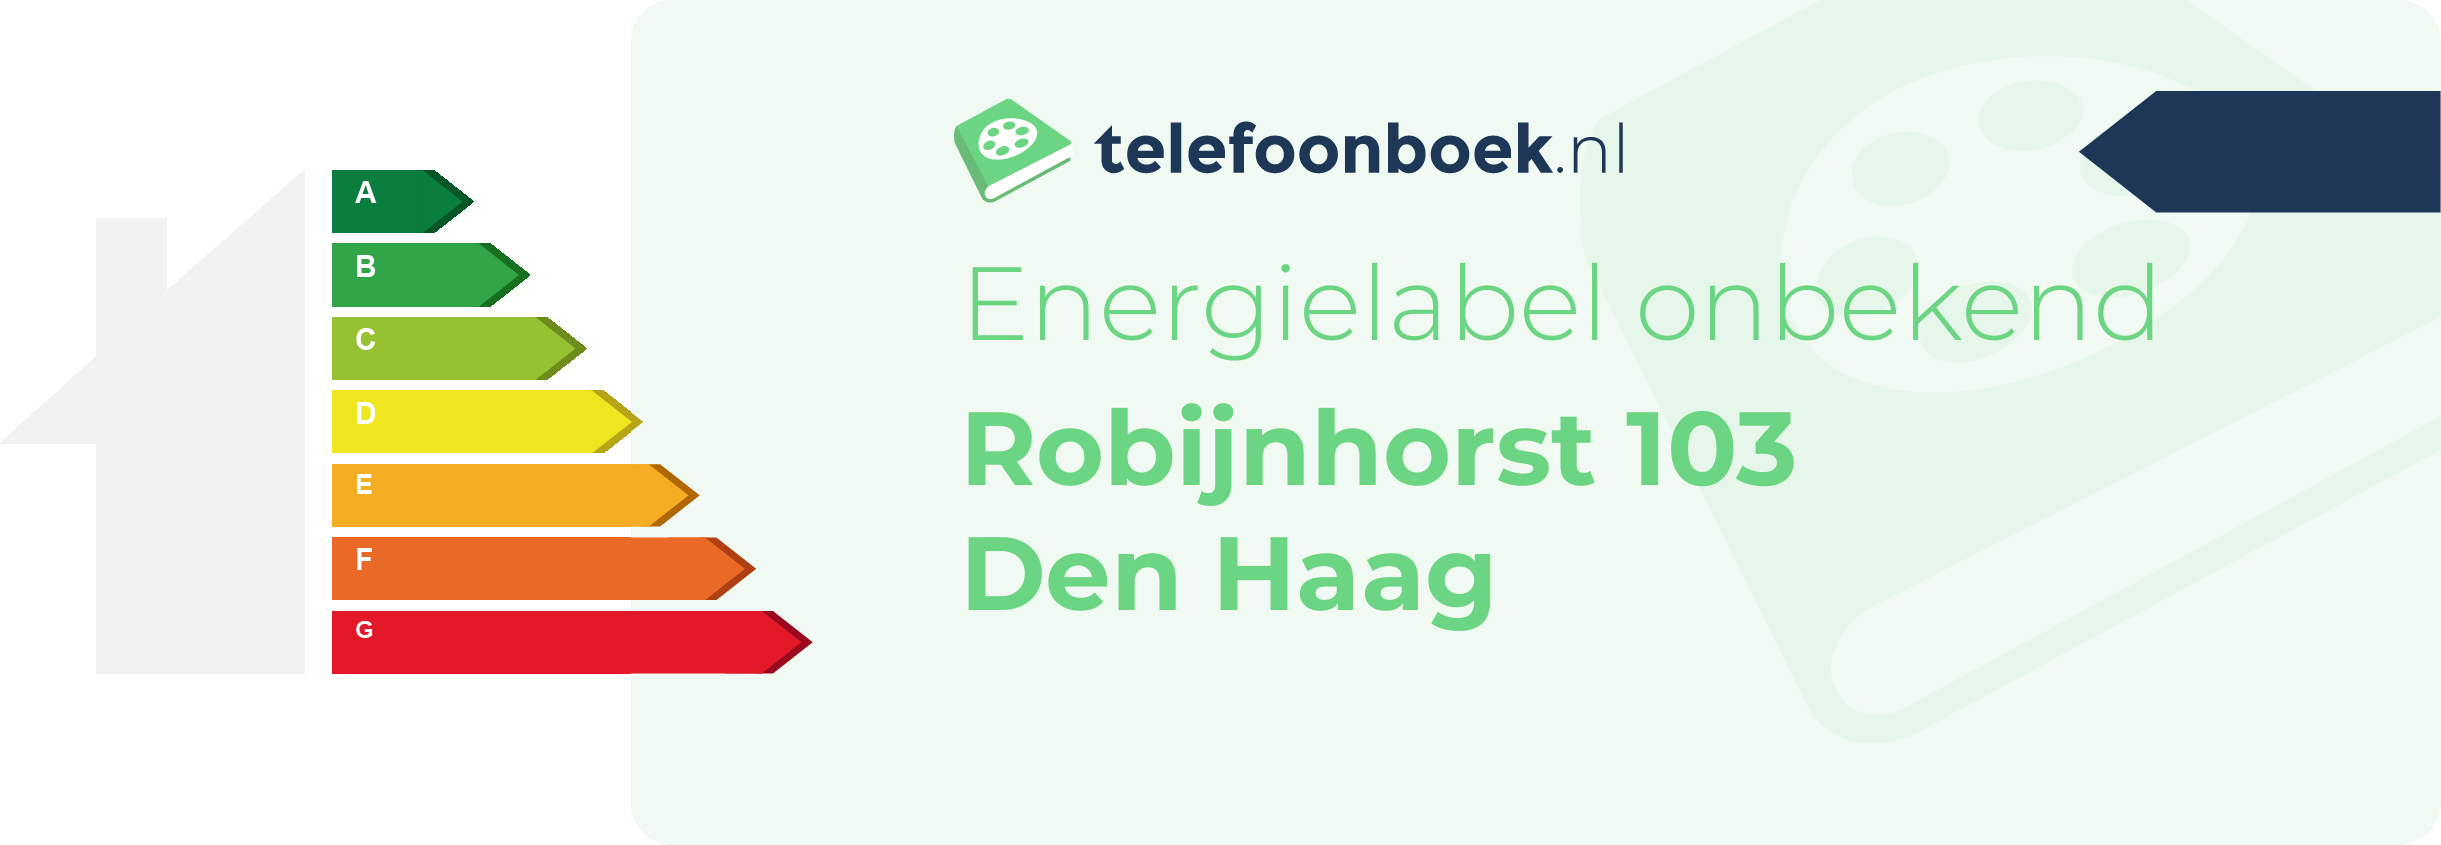 Energielabel Robijnhorst 103 Den Haag